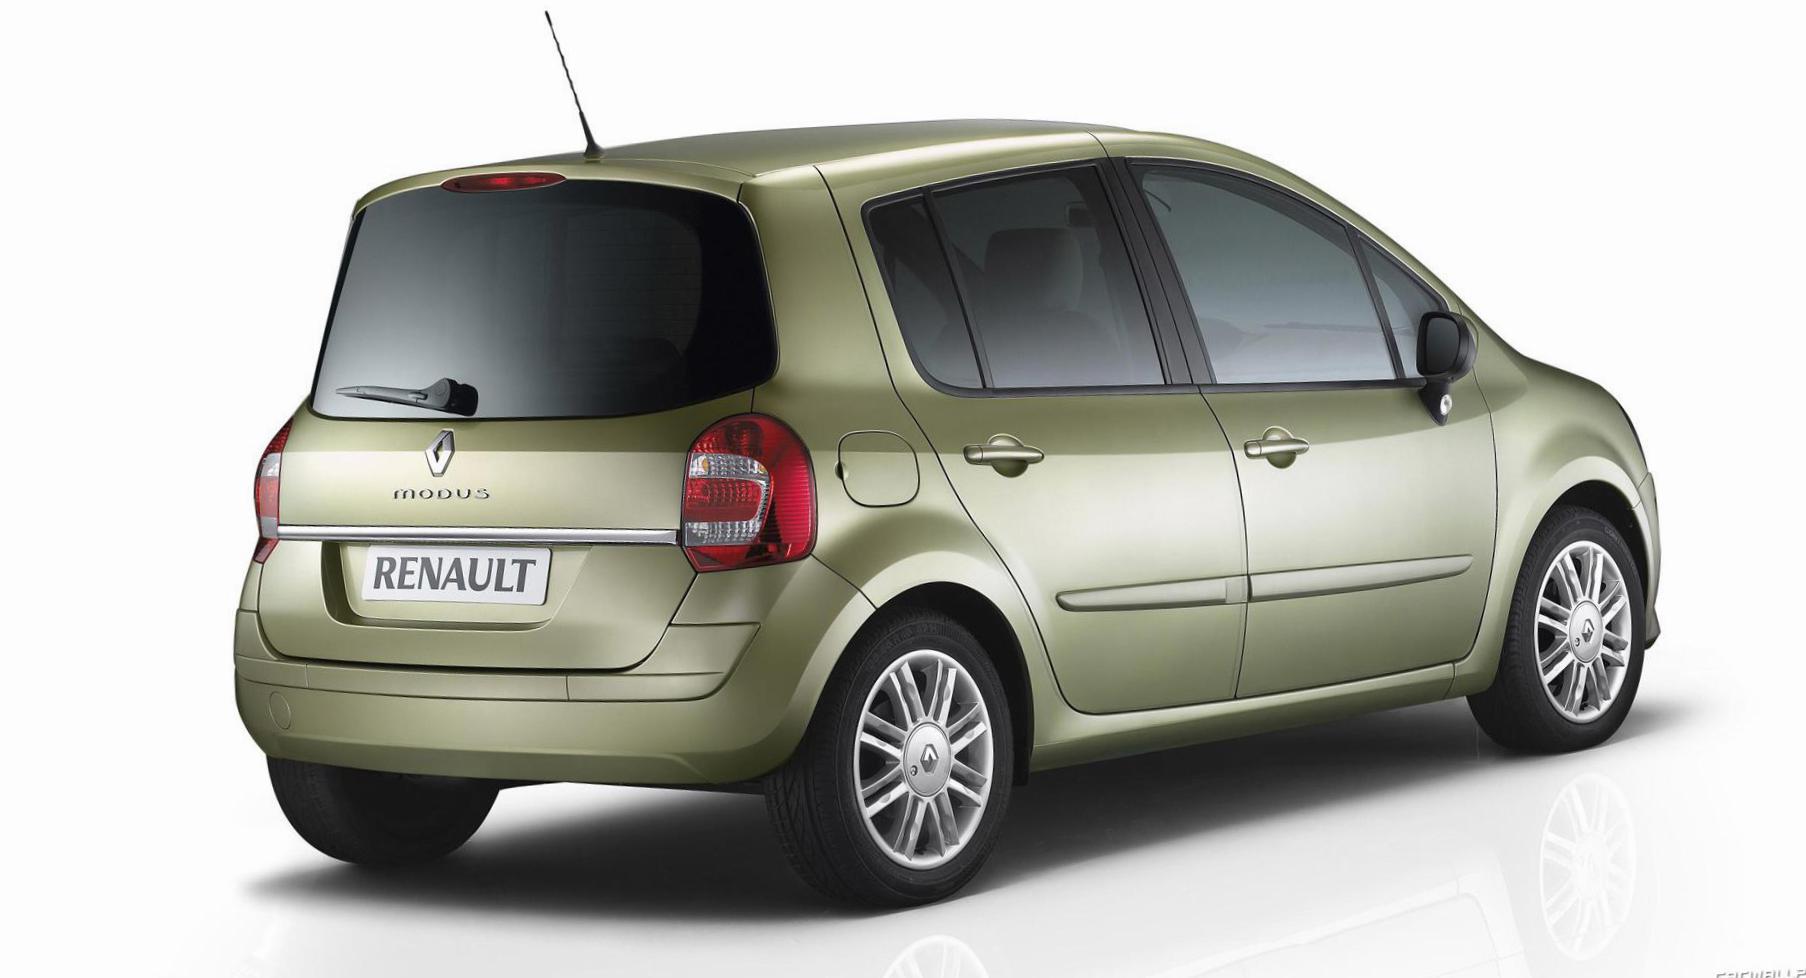 Renault Modus configuration 2010